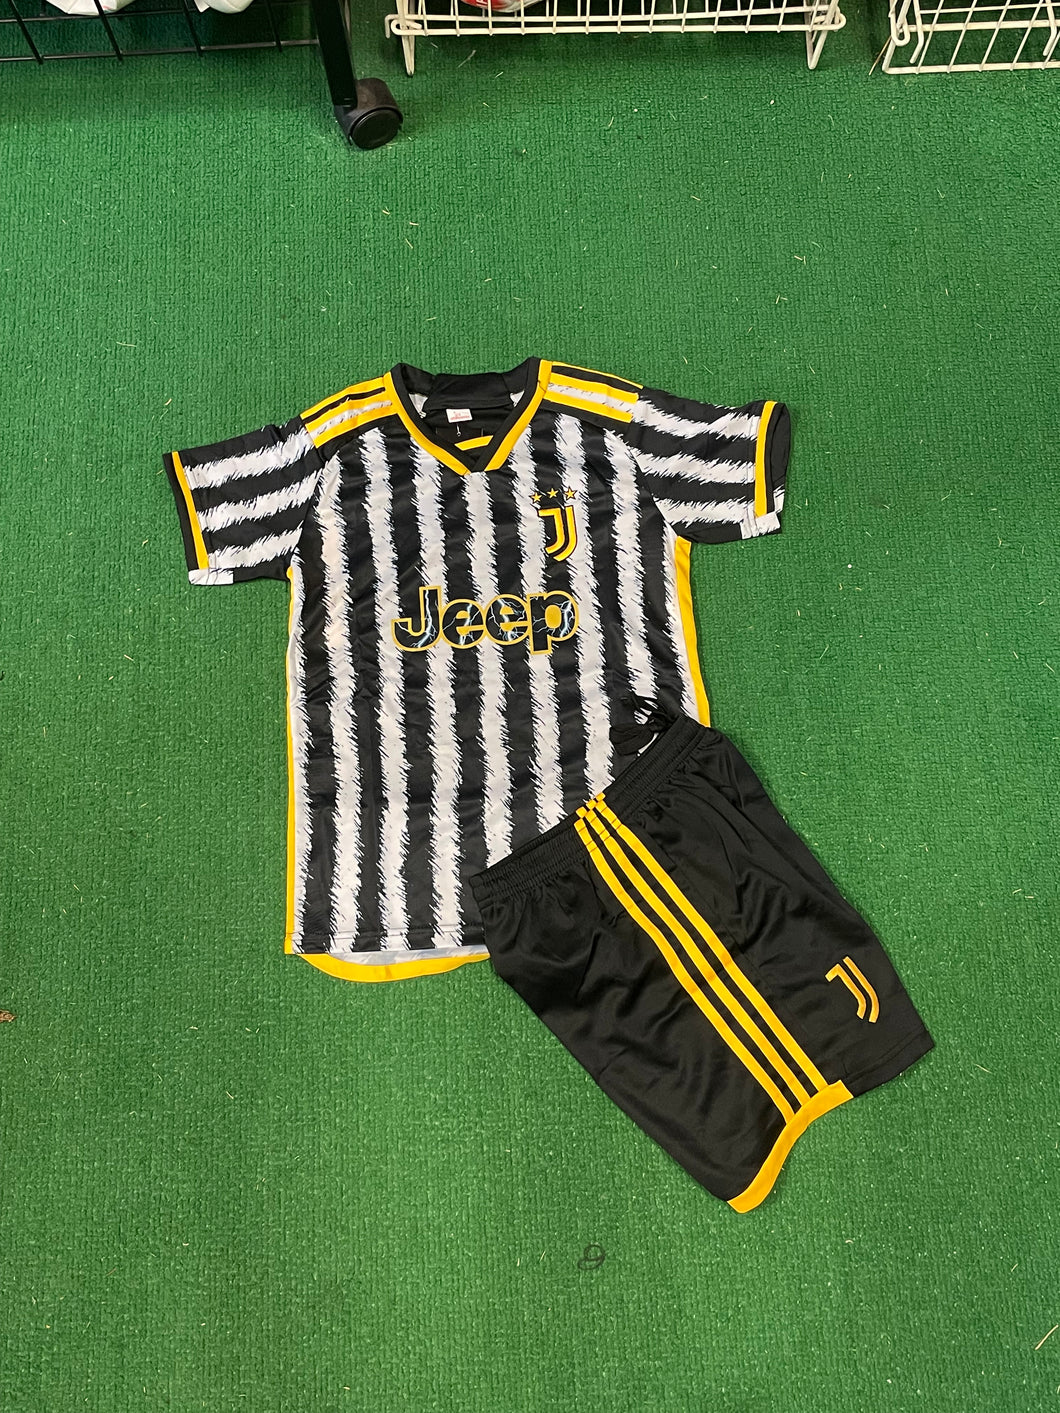 Juventus Youth Home Kit 23/24